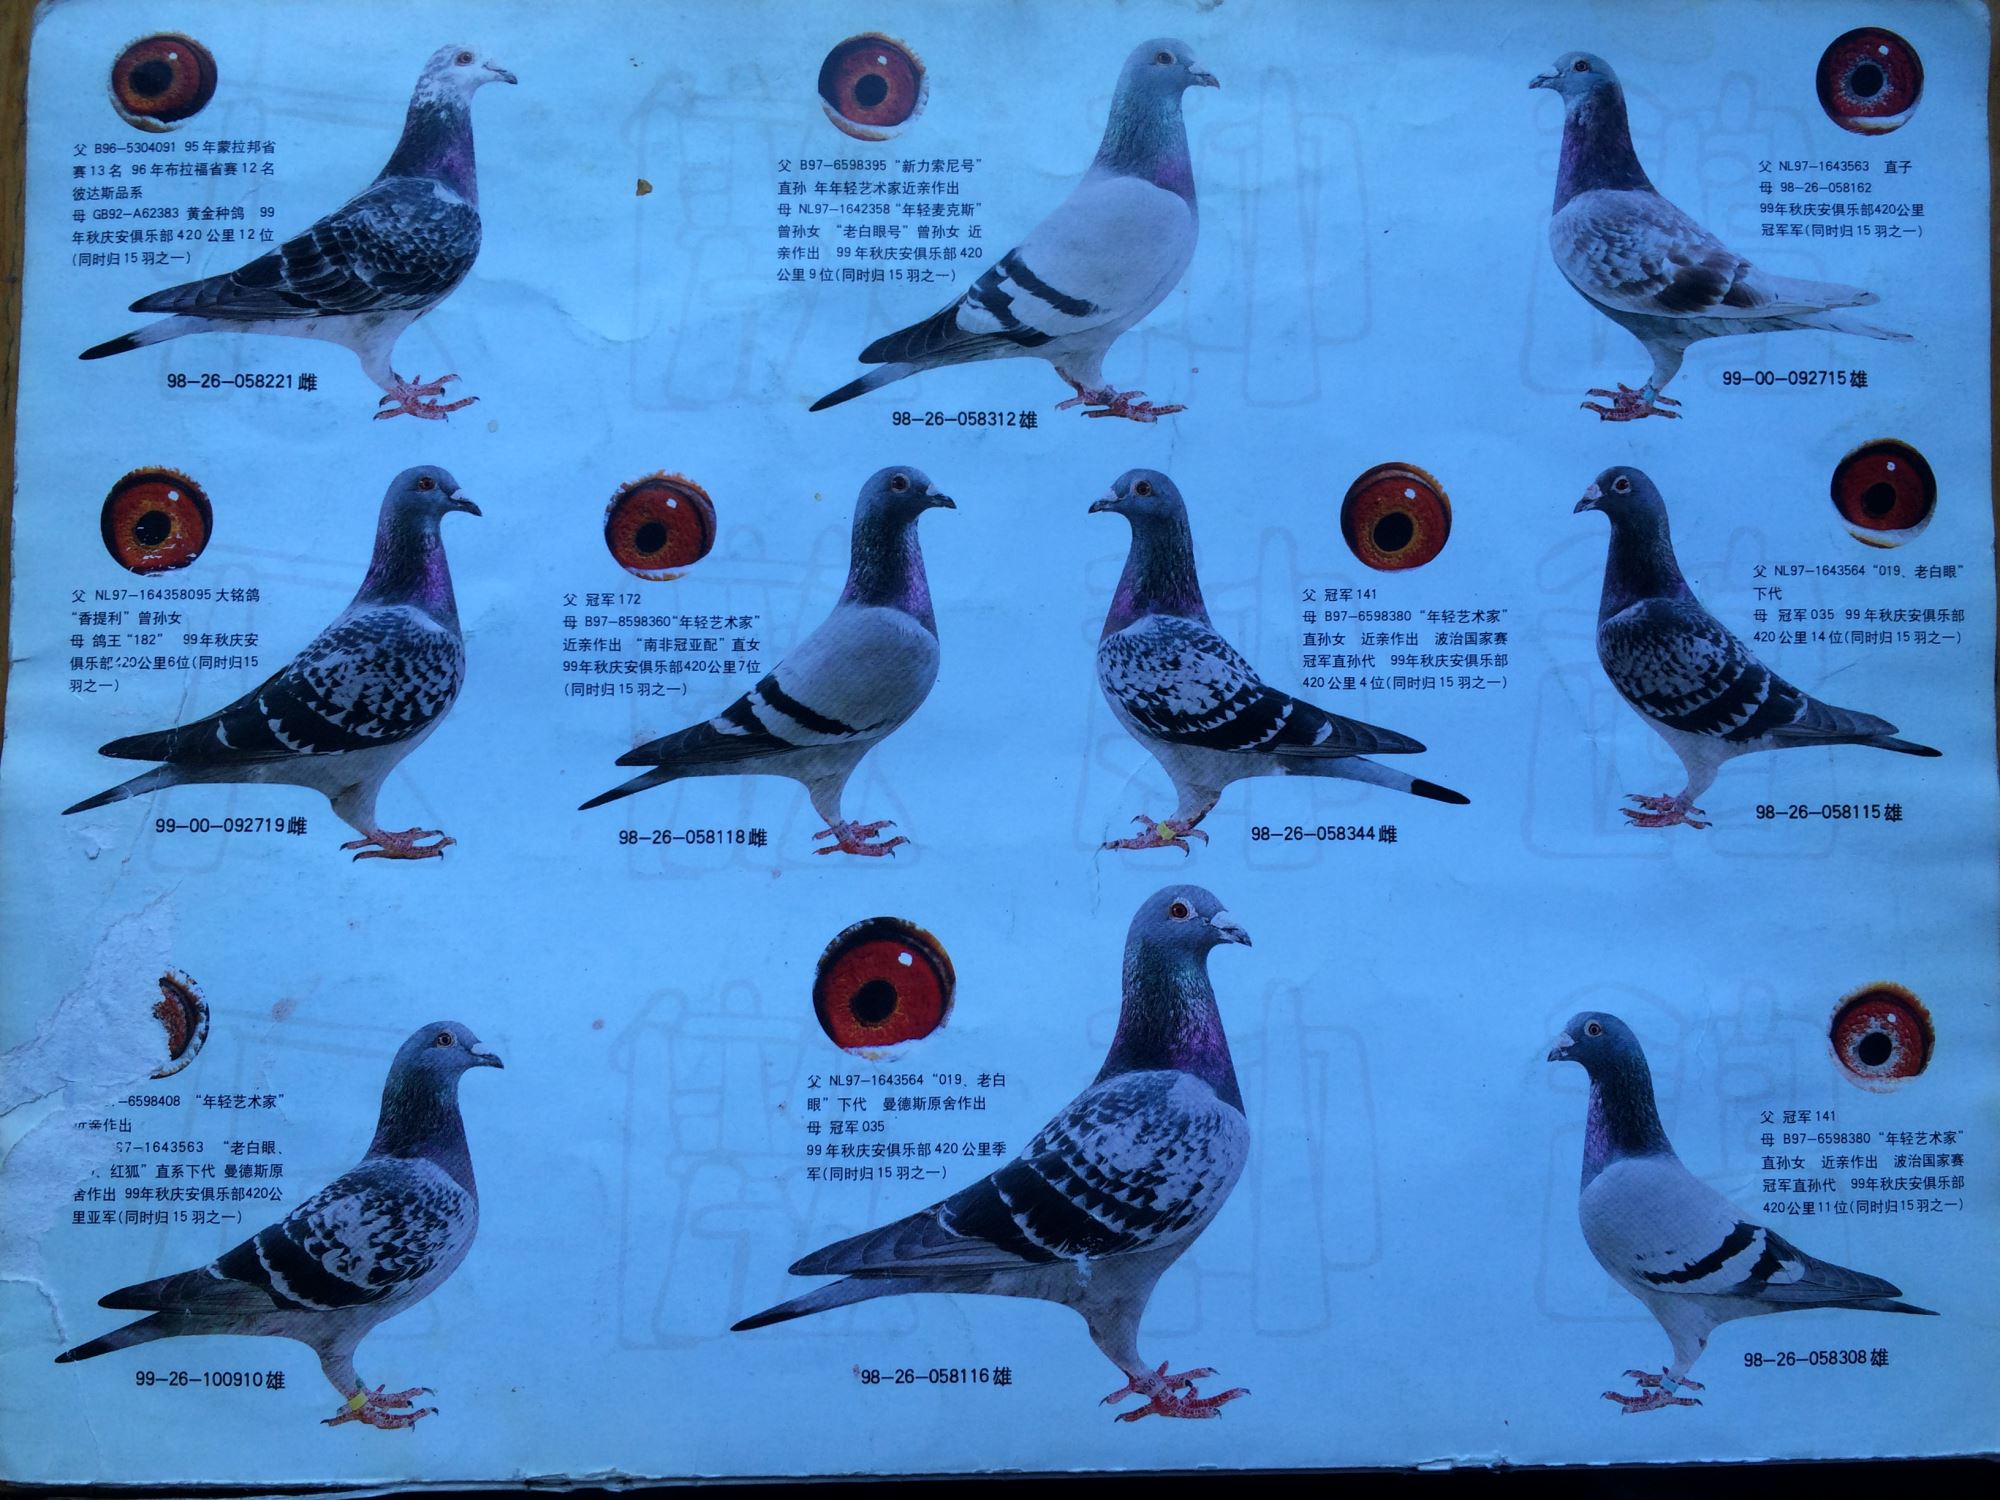 观赏鸽子品种大全名字图片